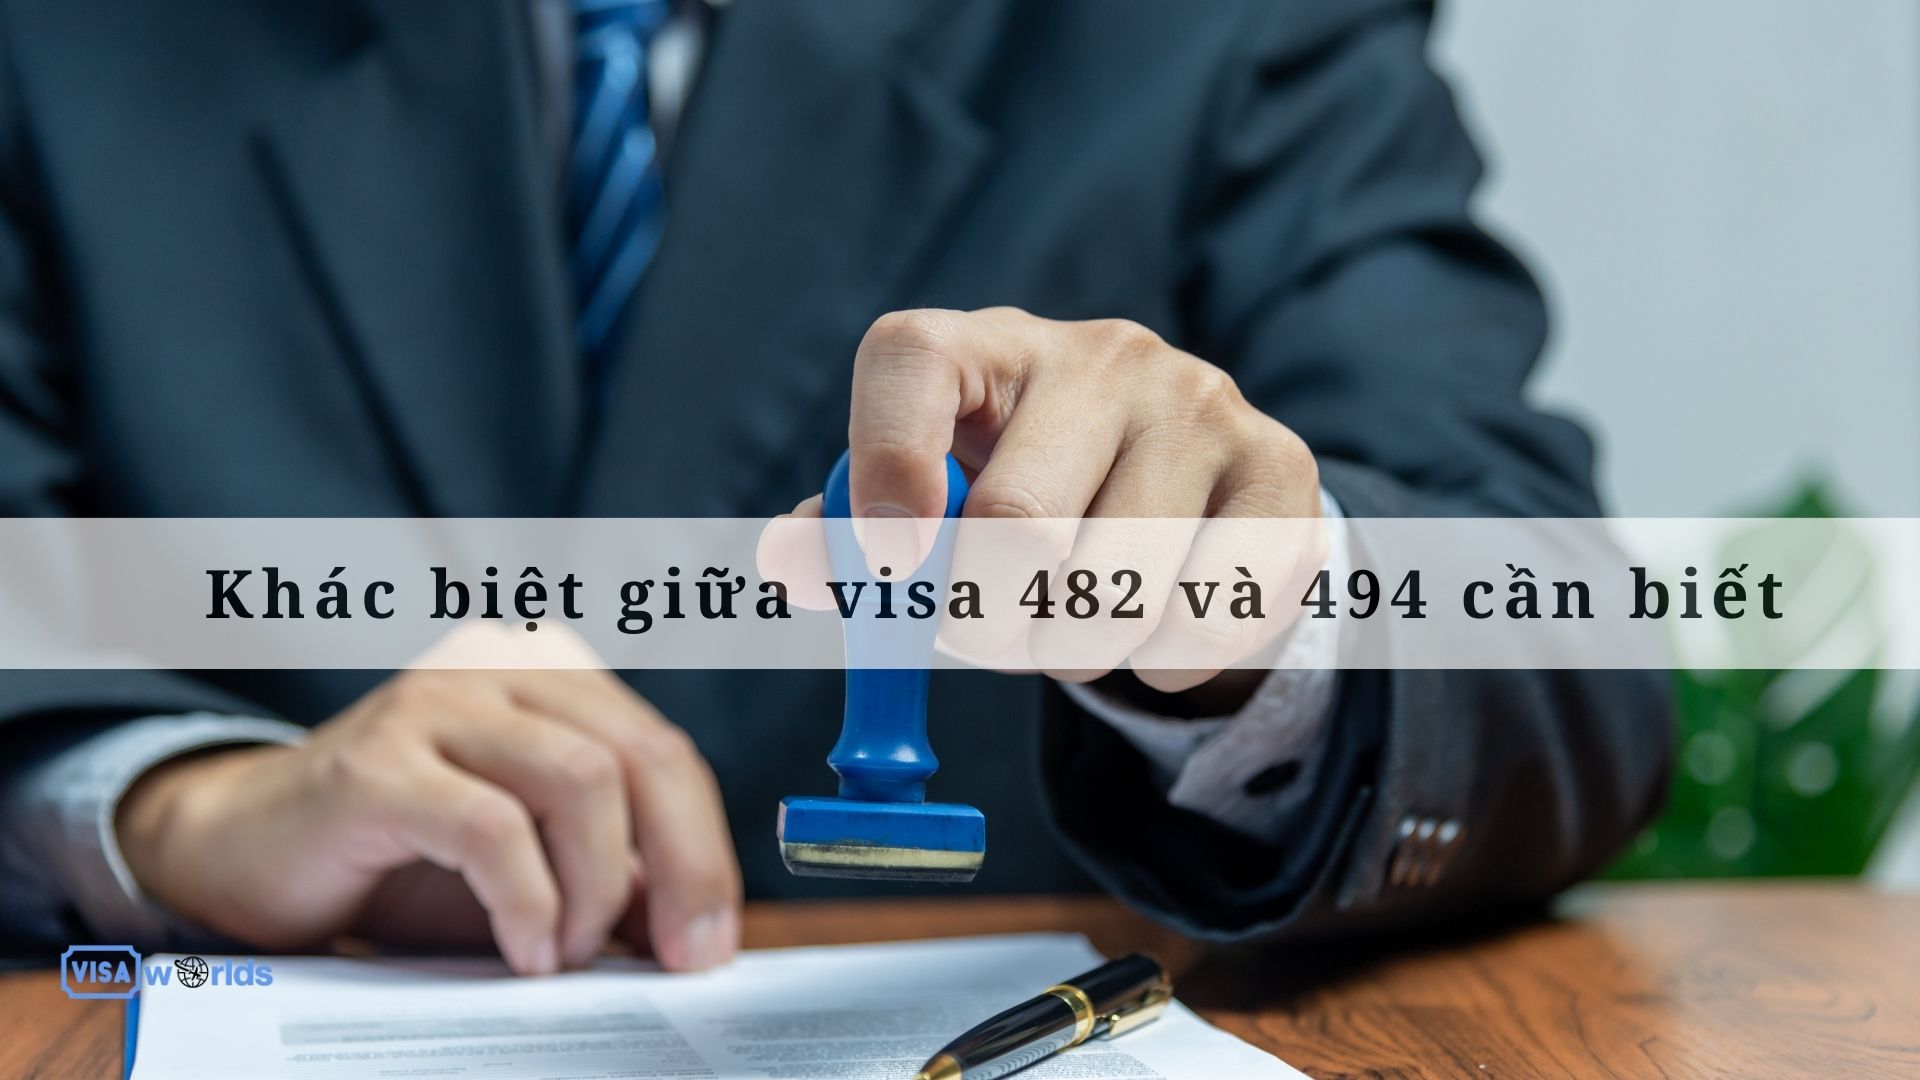 Khác biệt giữa visa 491 và 494 cần biết 